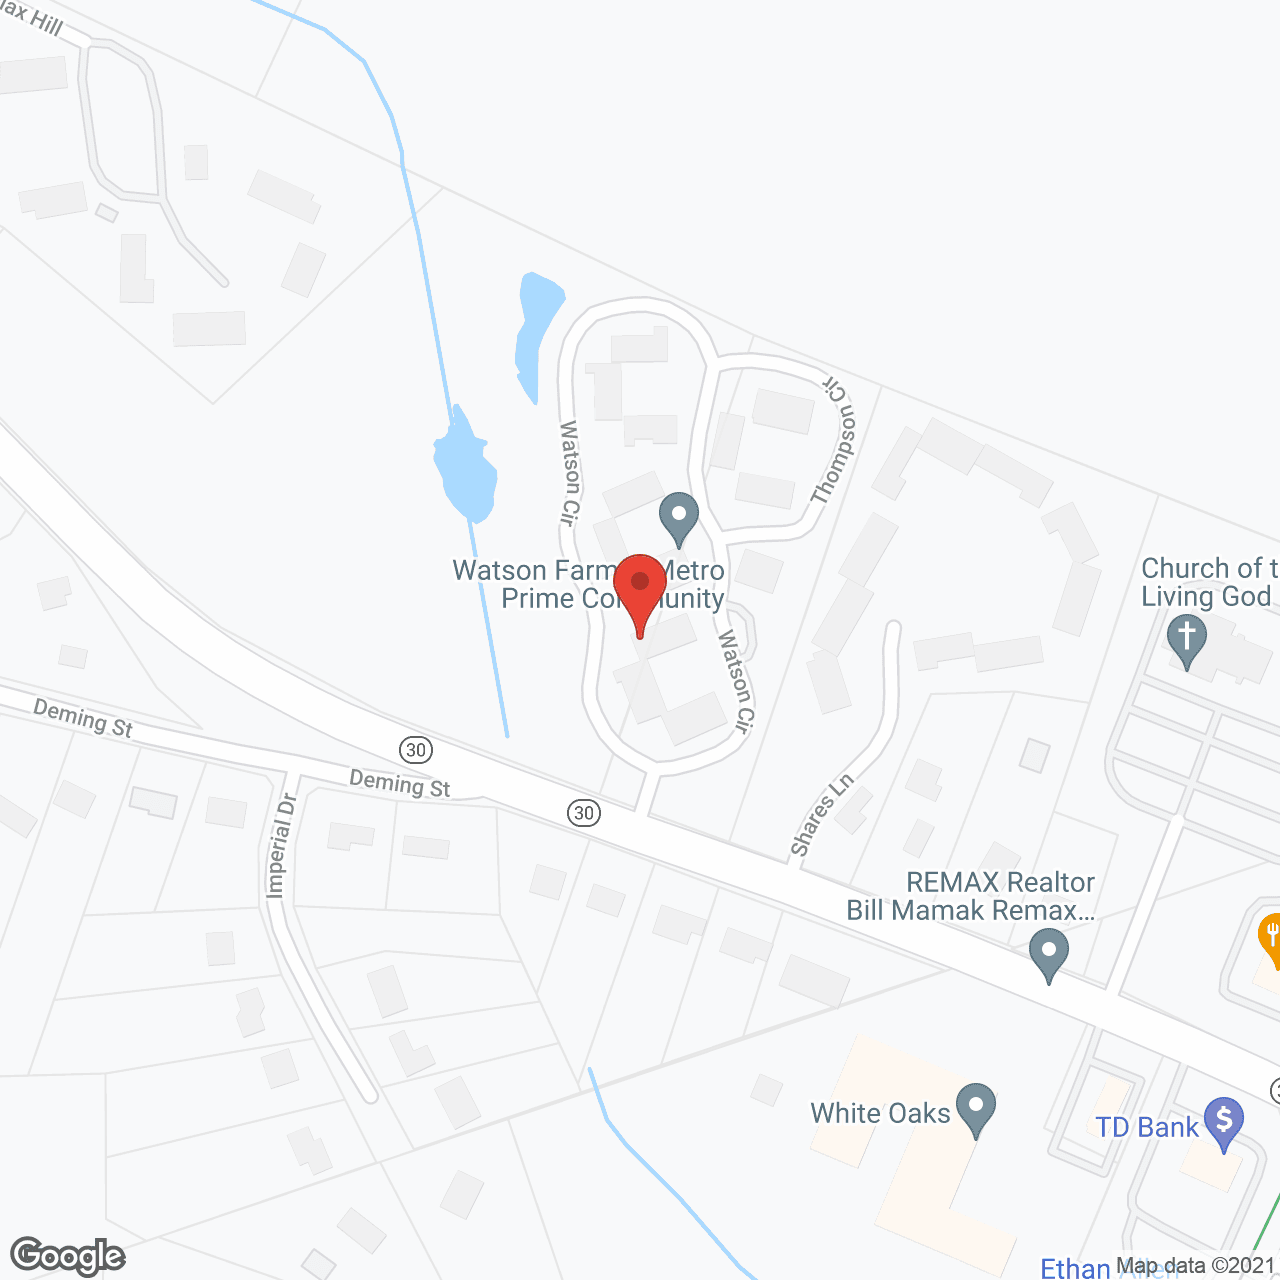 Watson Farm in google map